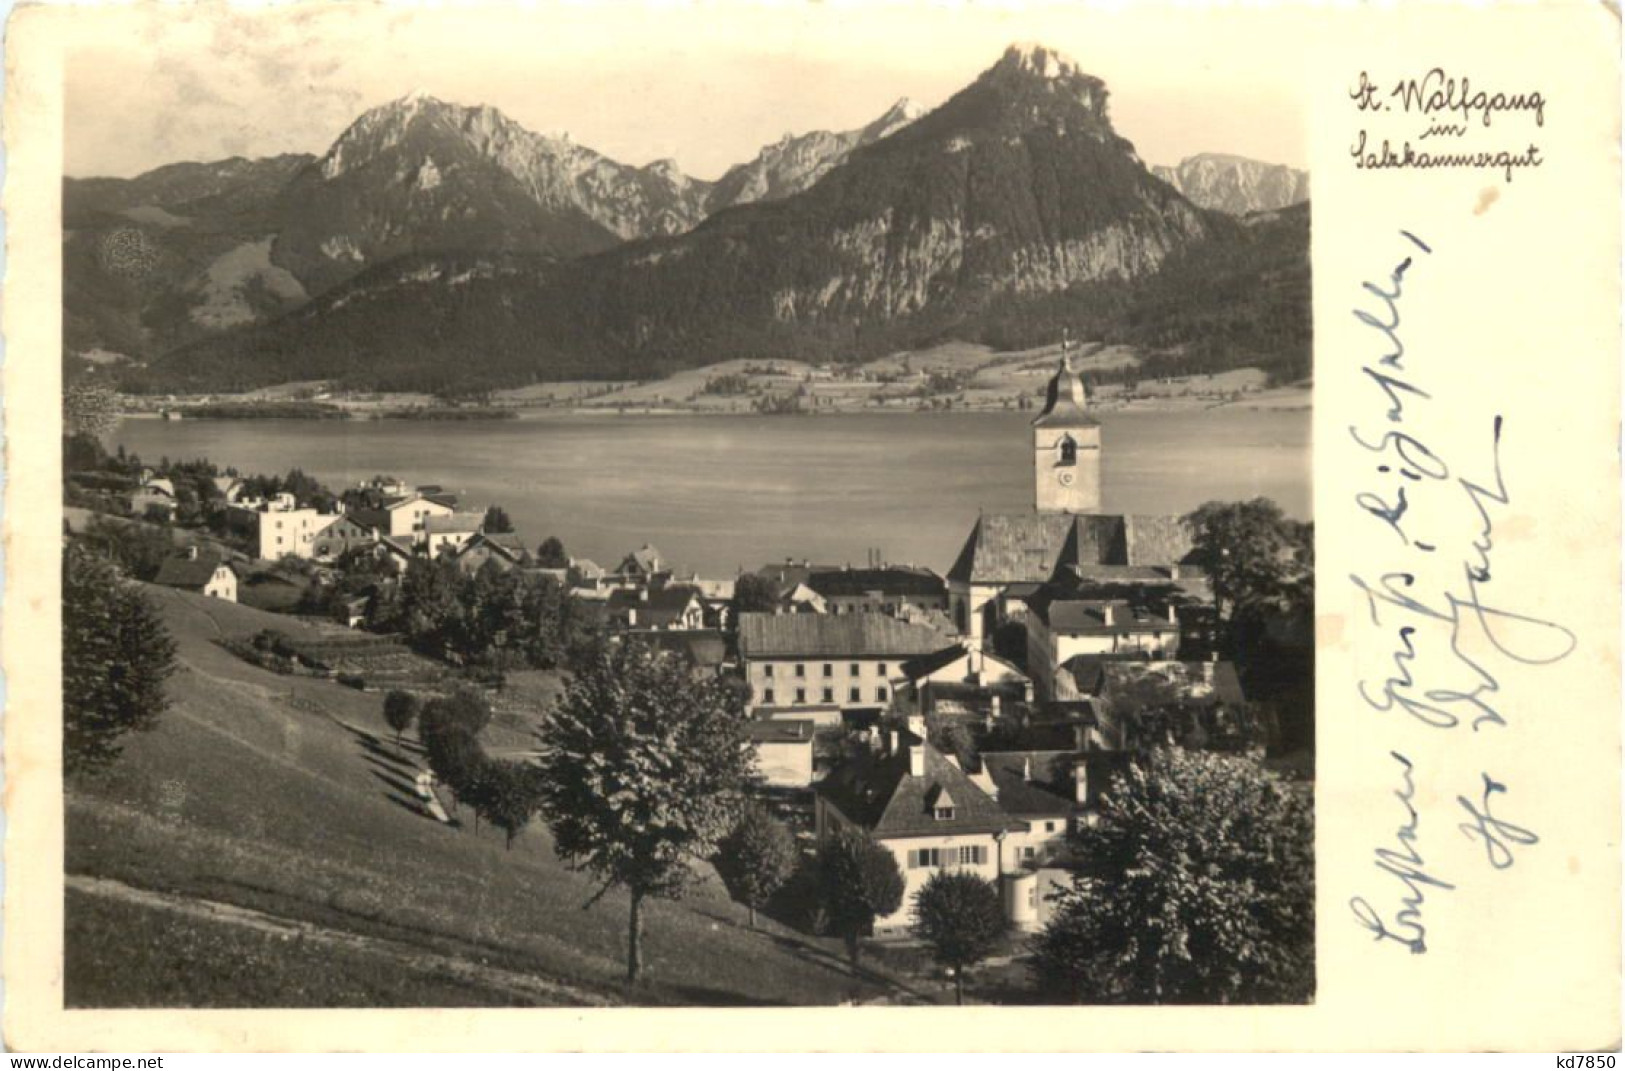 St. Wolfgang - Gmunden